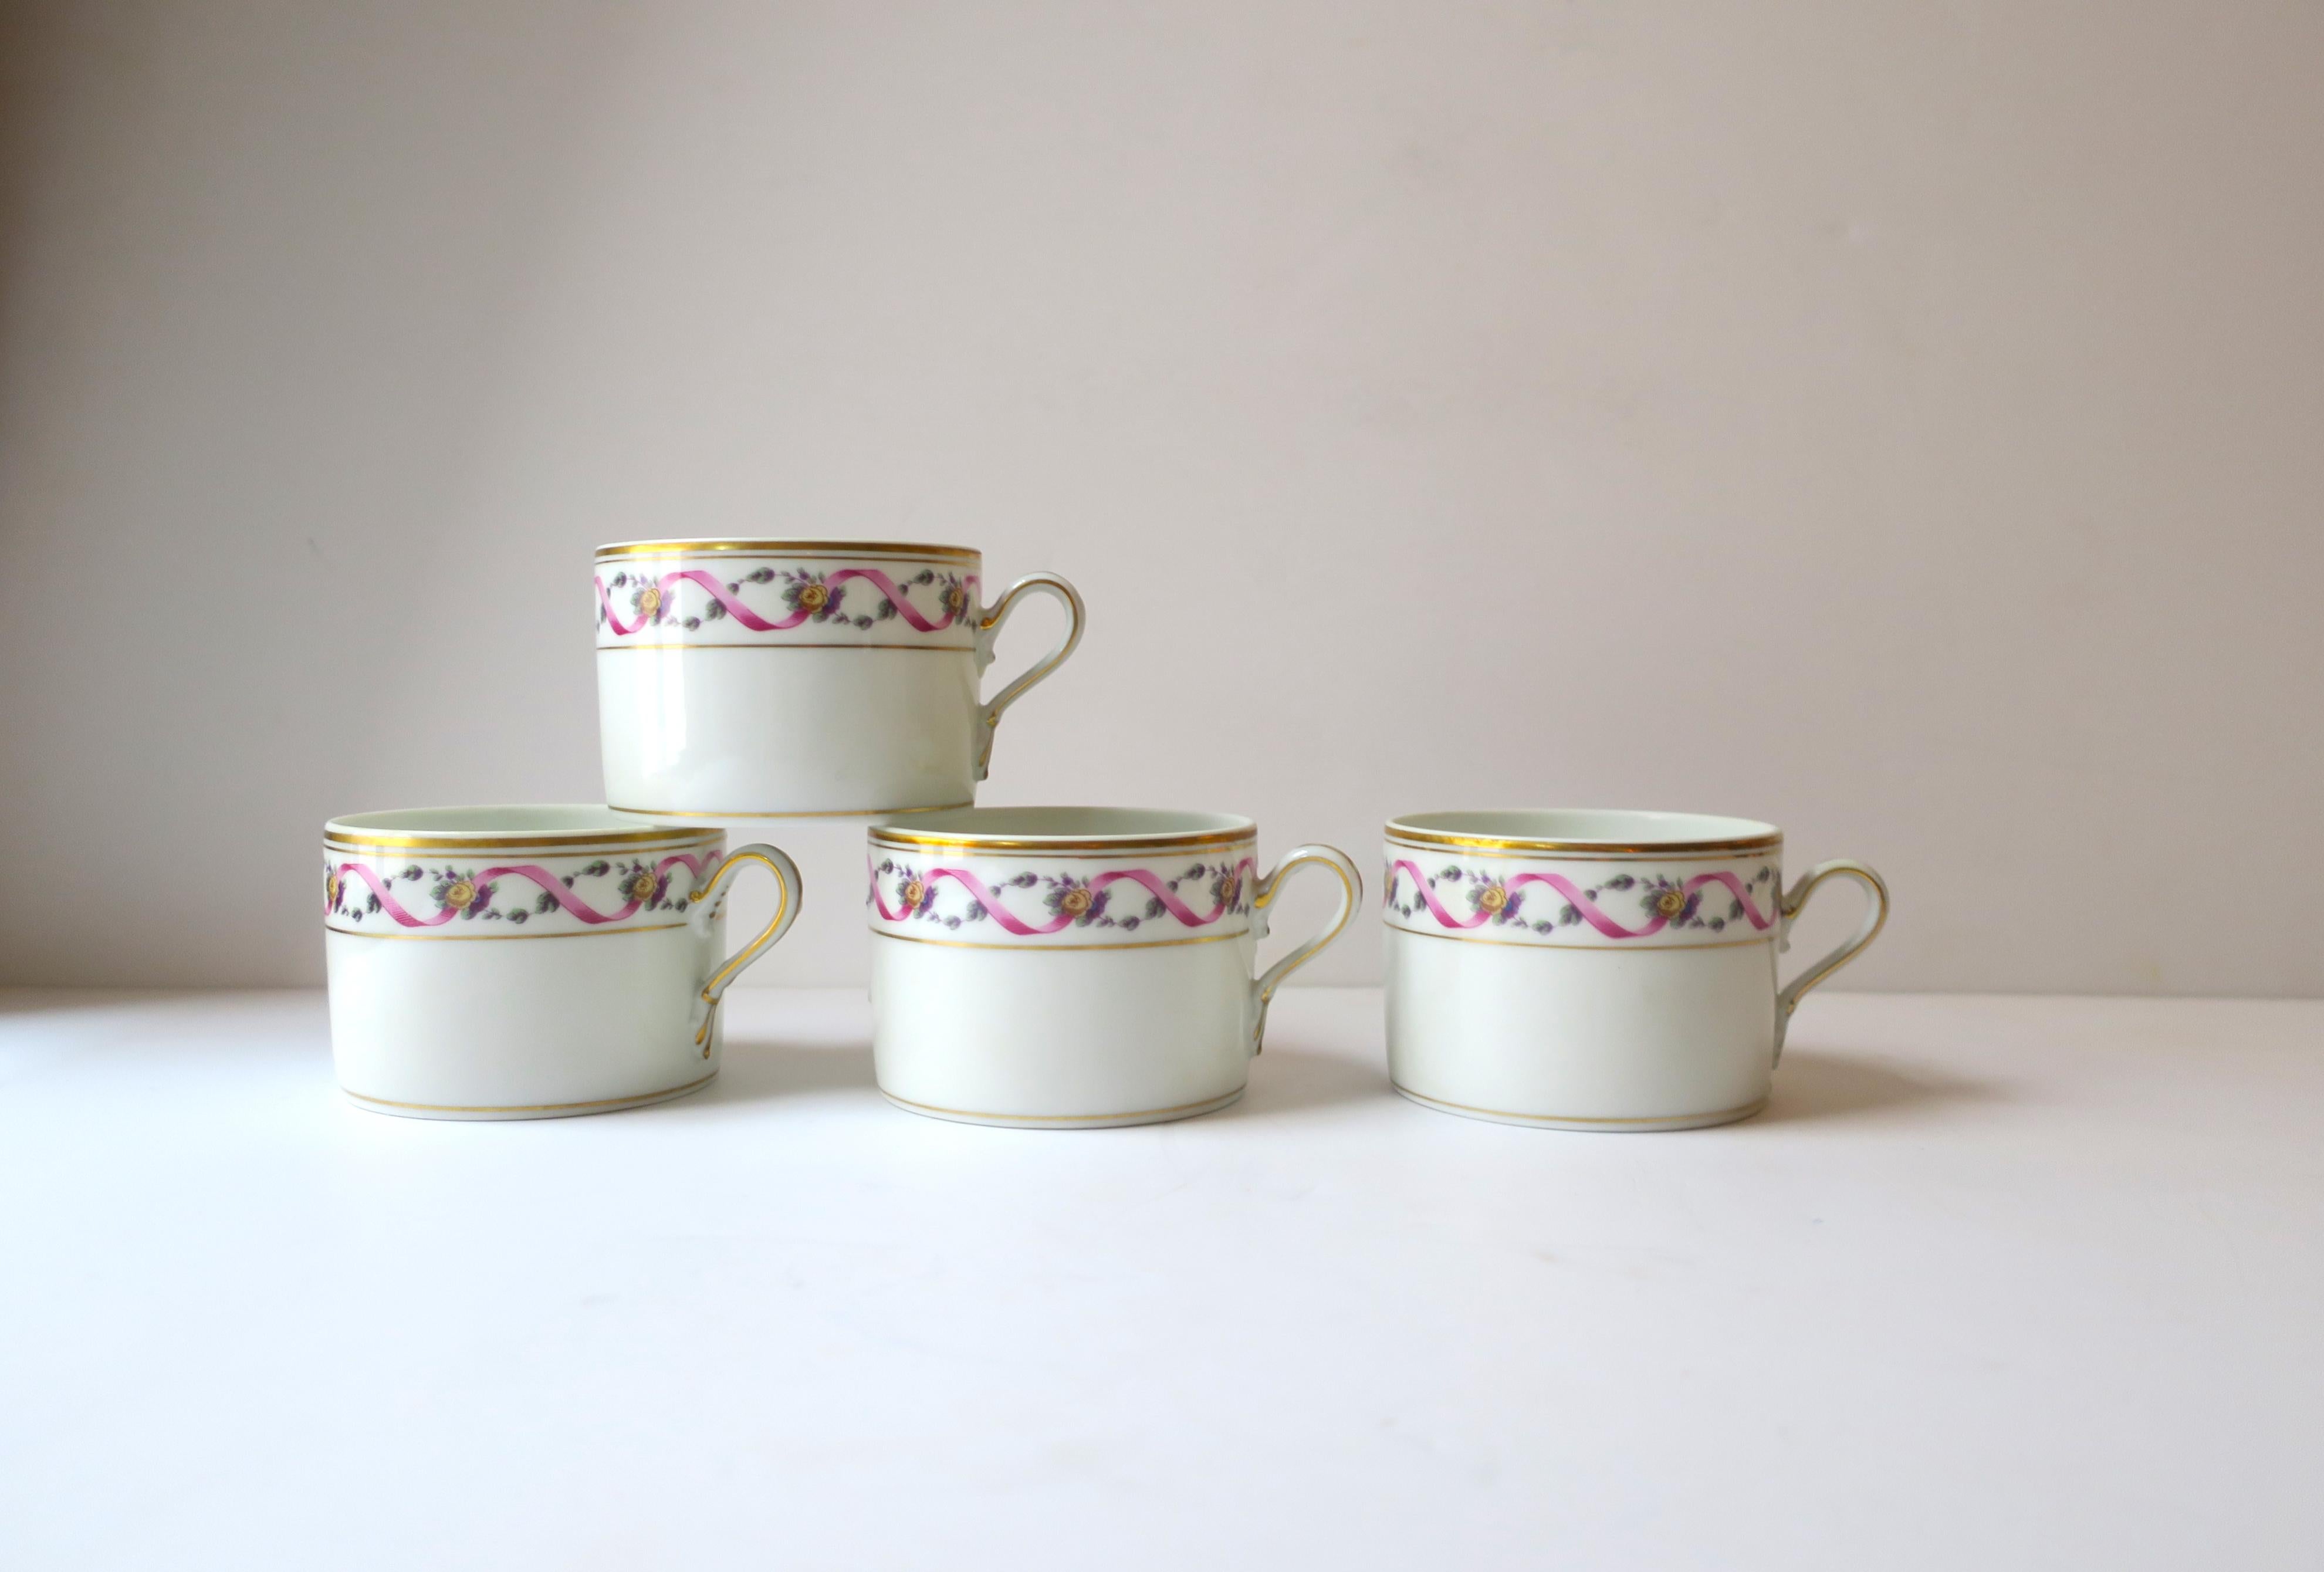 Un magnifique ensemble de quatre (4) tasses à café ou à thé en porcelaine italienne de Richard Ginori, vers la fin du 20e siècle, années 1980, Italie. Les tasses sont en porcelaine émaillée blanche avec des détails dorés sur la lèvre, le bord, la